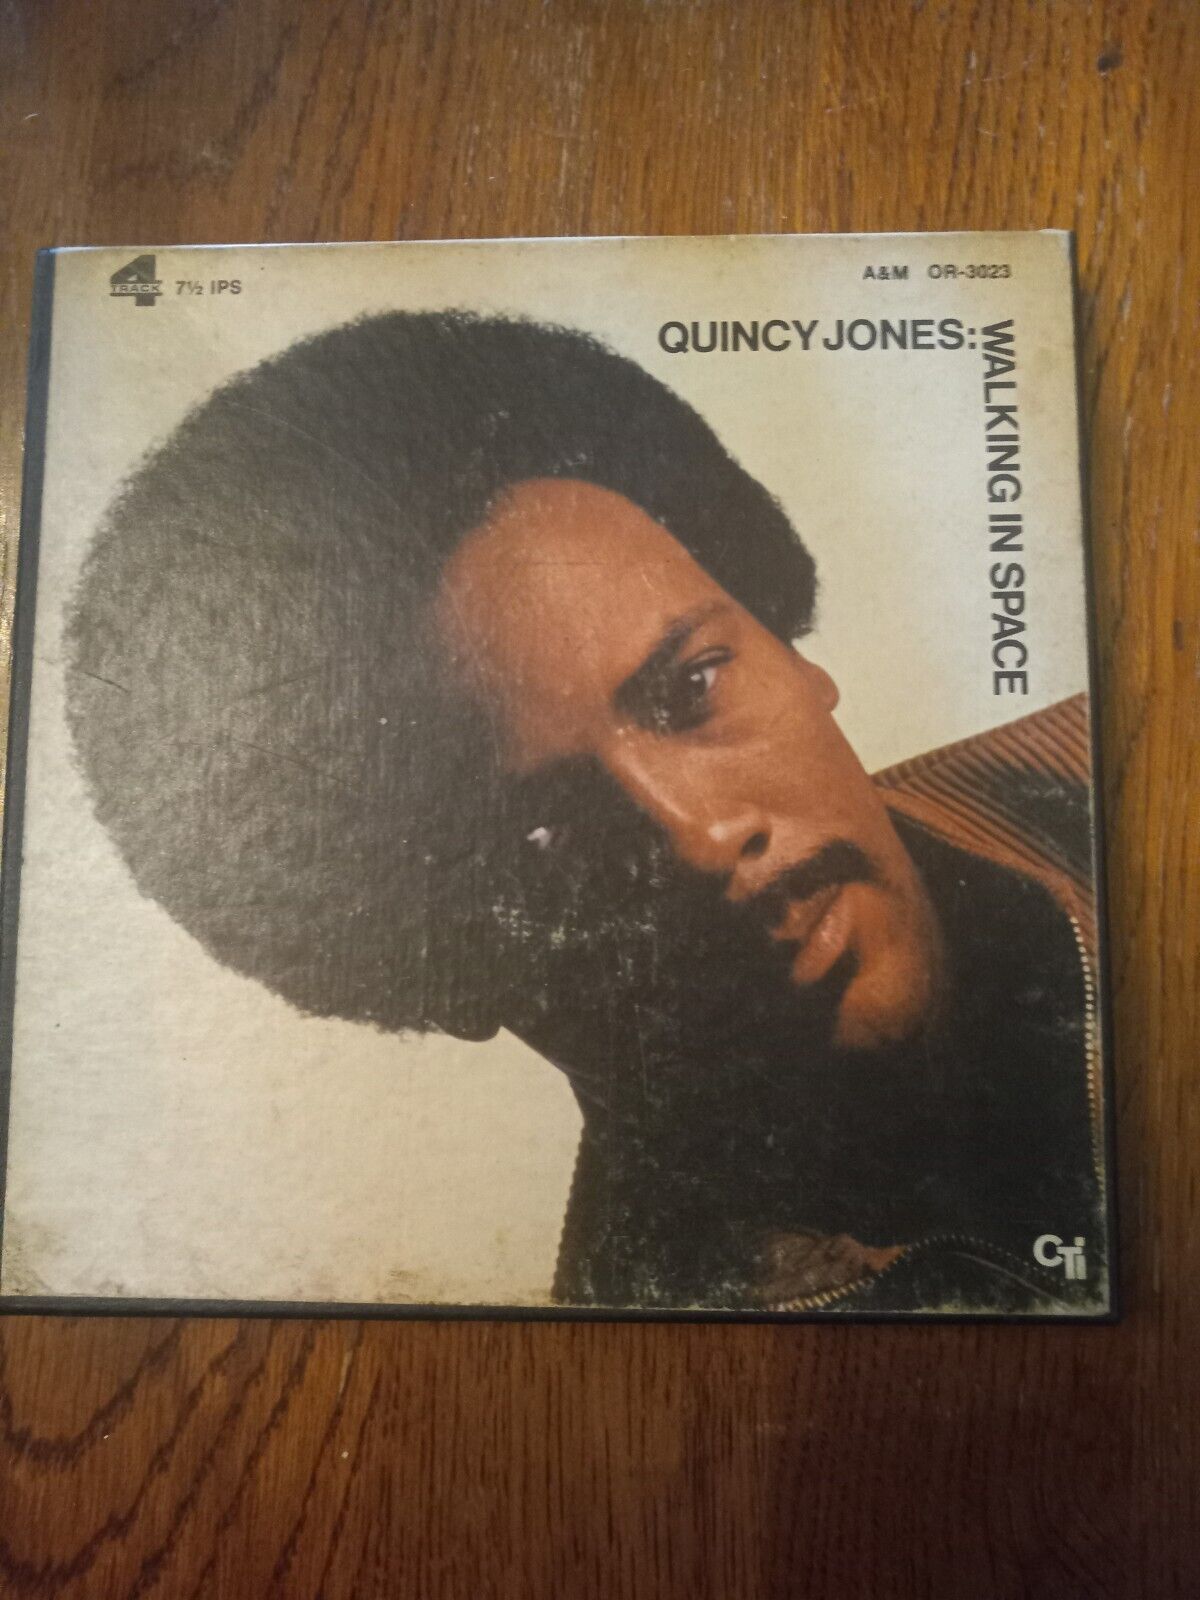 Quincy  Jones, track reel to reel